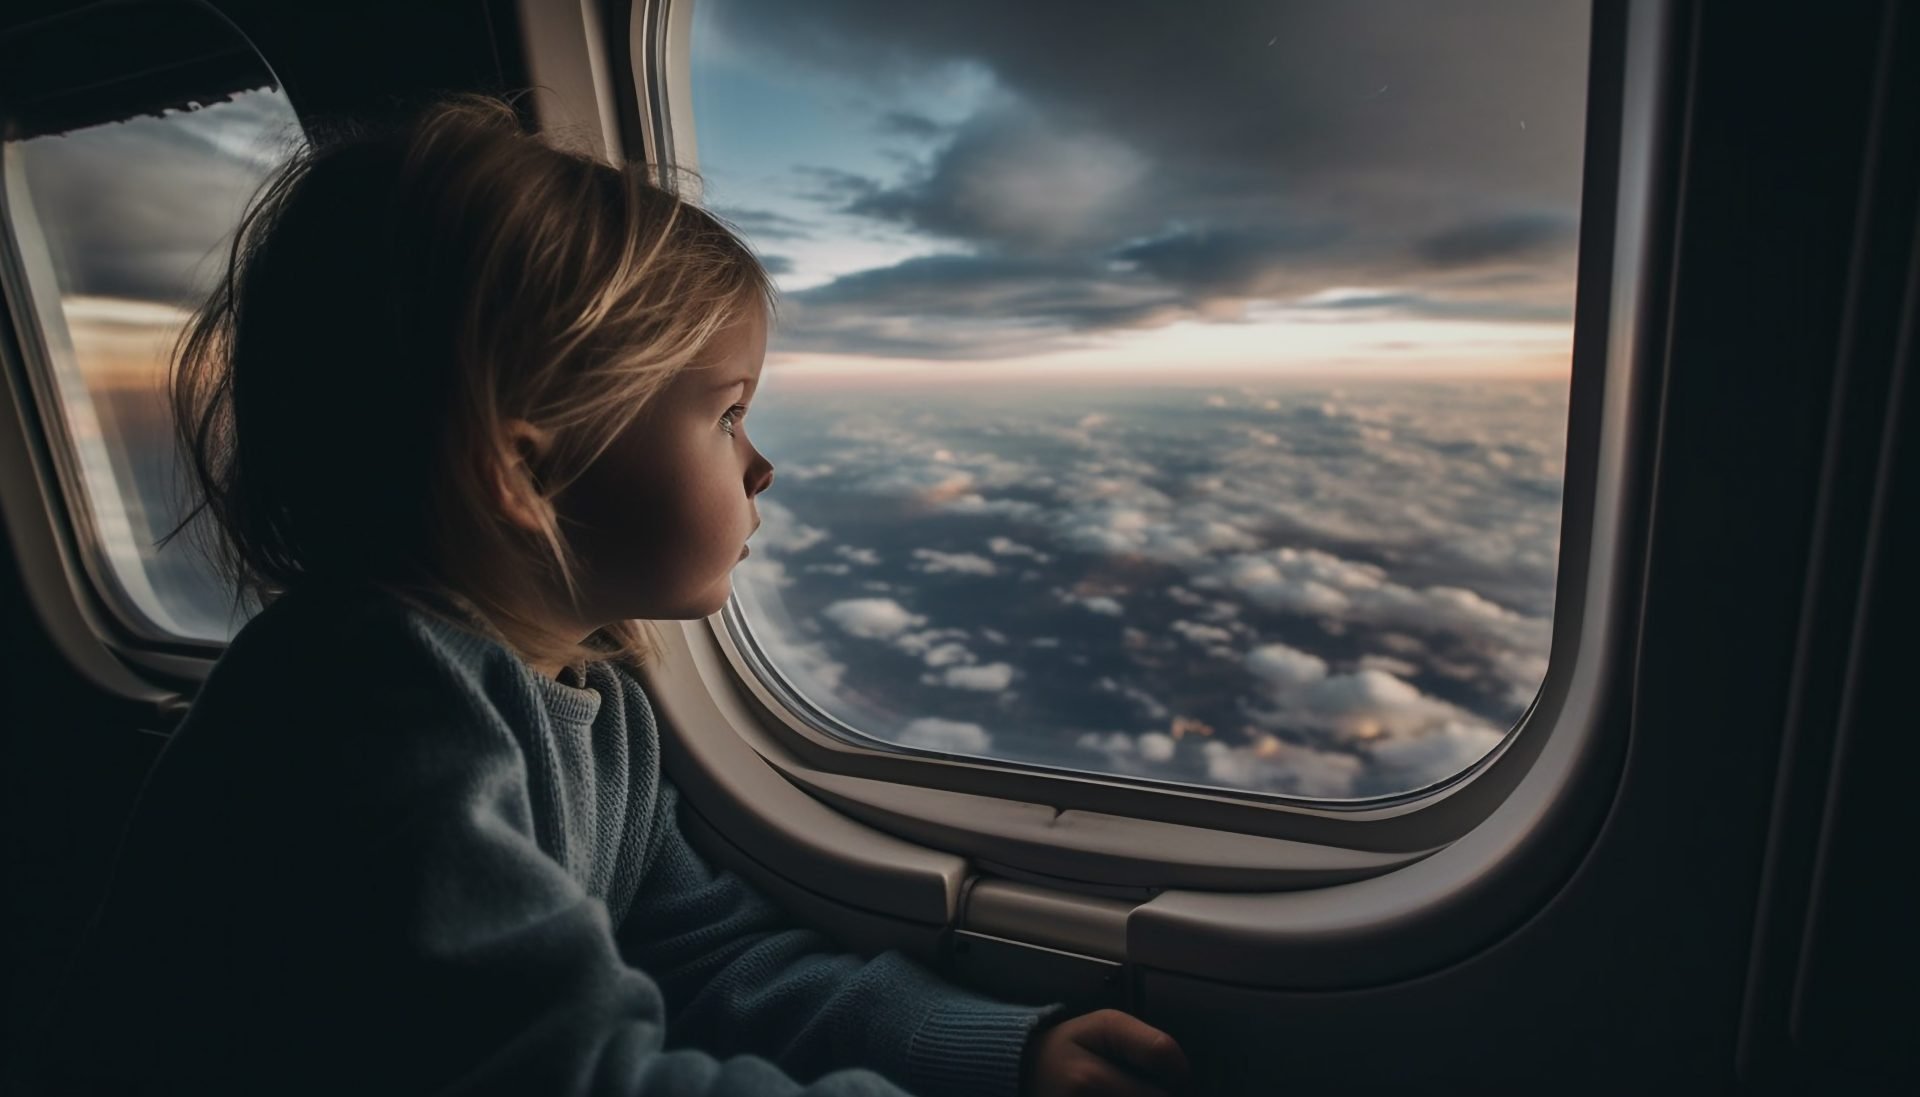 Criança paga passagem de avião? Confira as regras de voo nacional e internacional para viajar com crianças